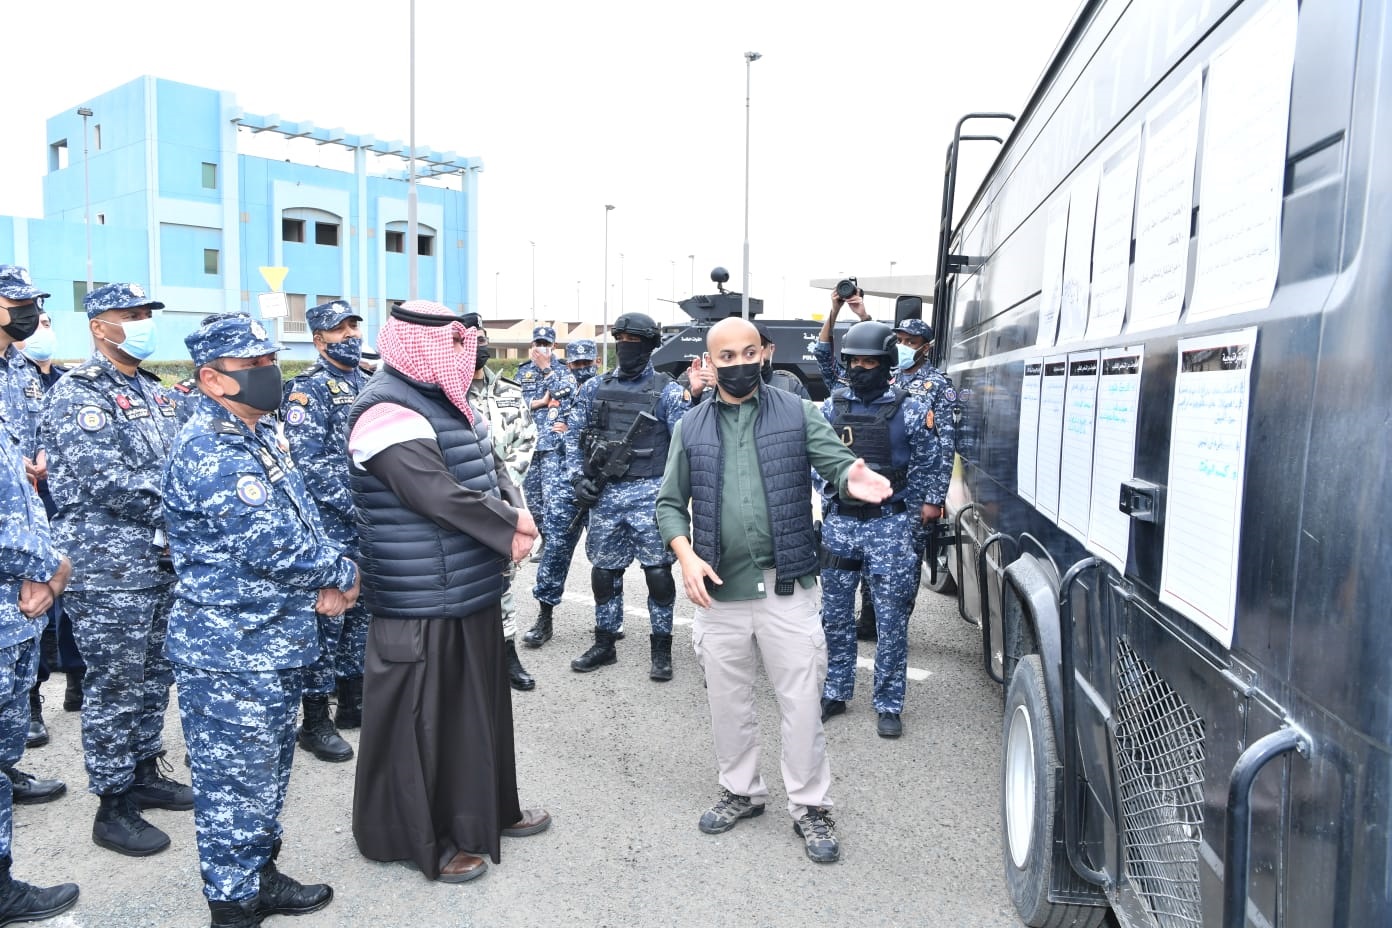 وزير الداخلية الشيخ ثامر علي صباح السالم الصباح يتفقد قطاع الأمن الخاص